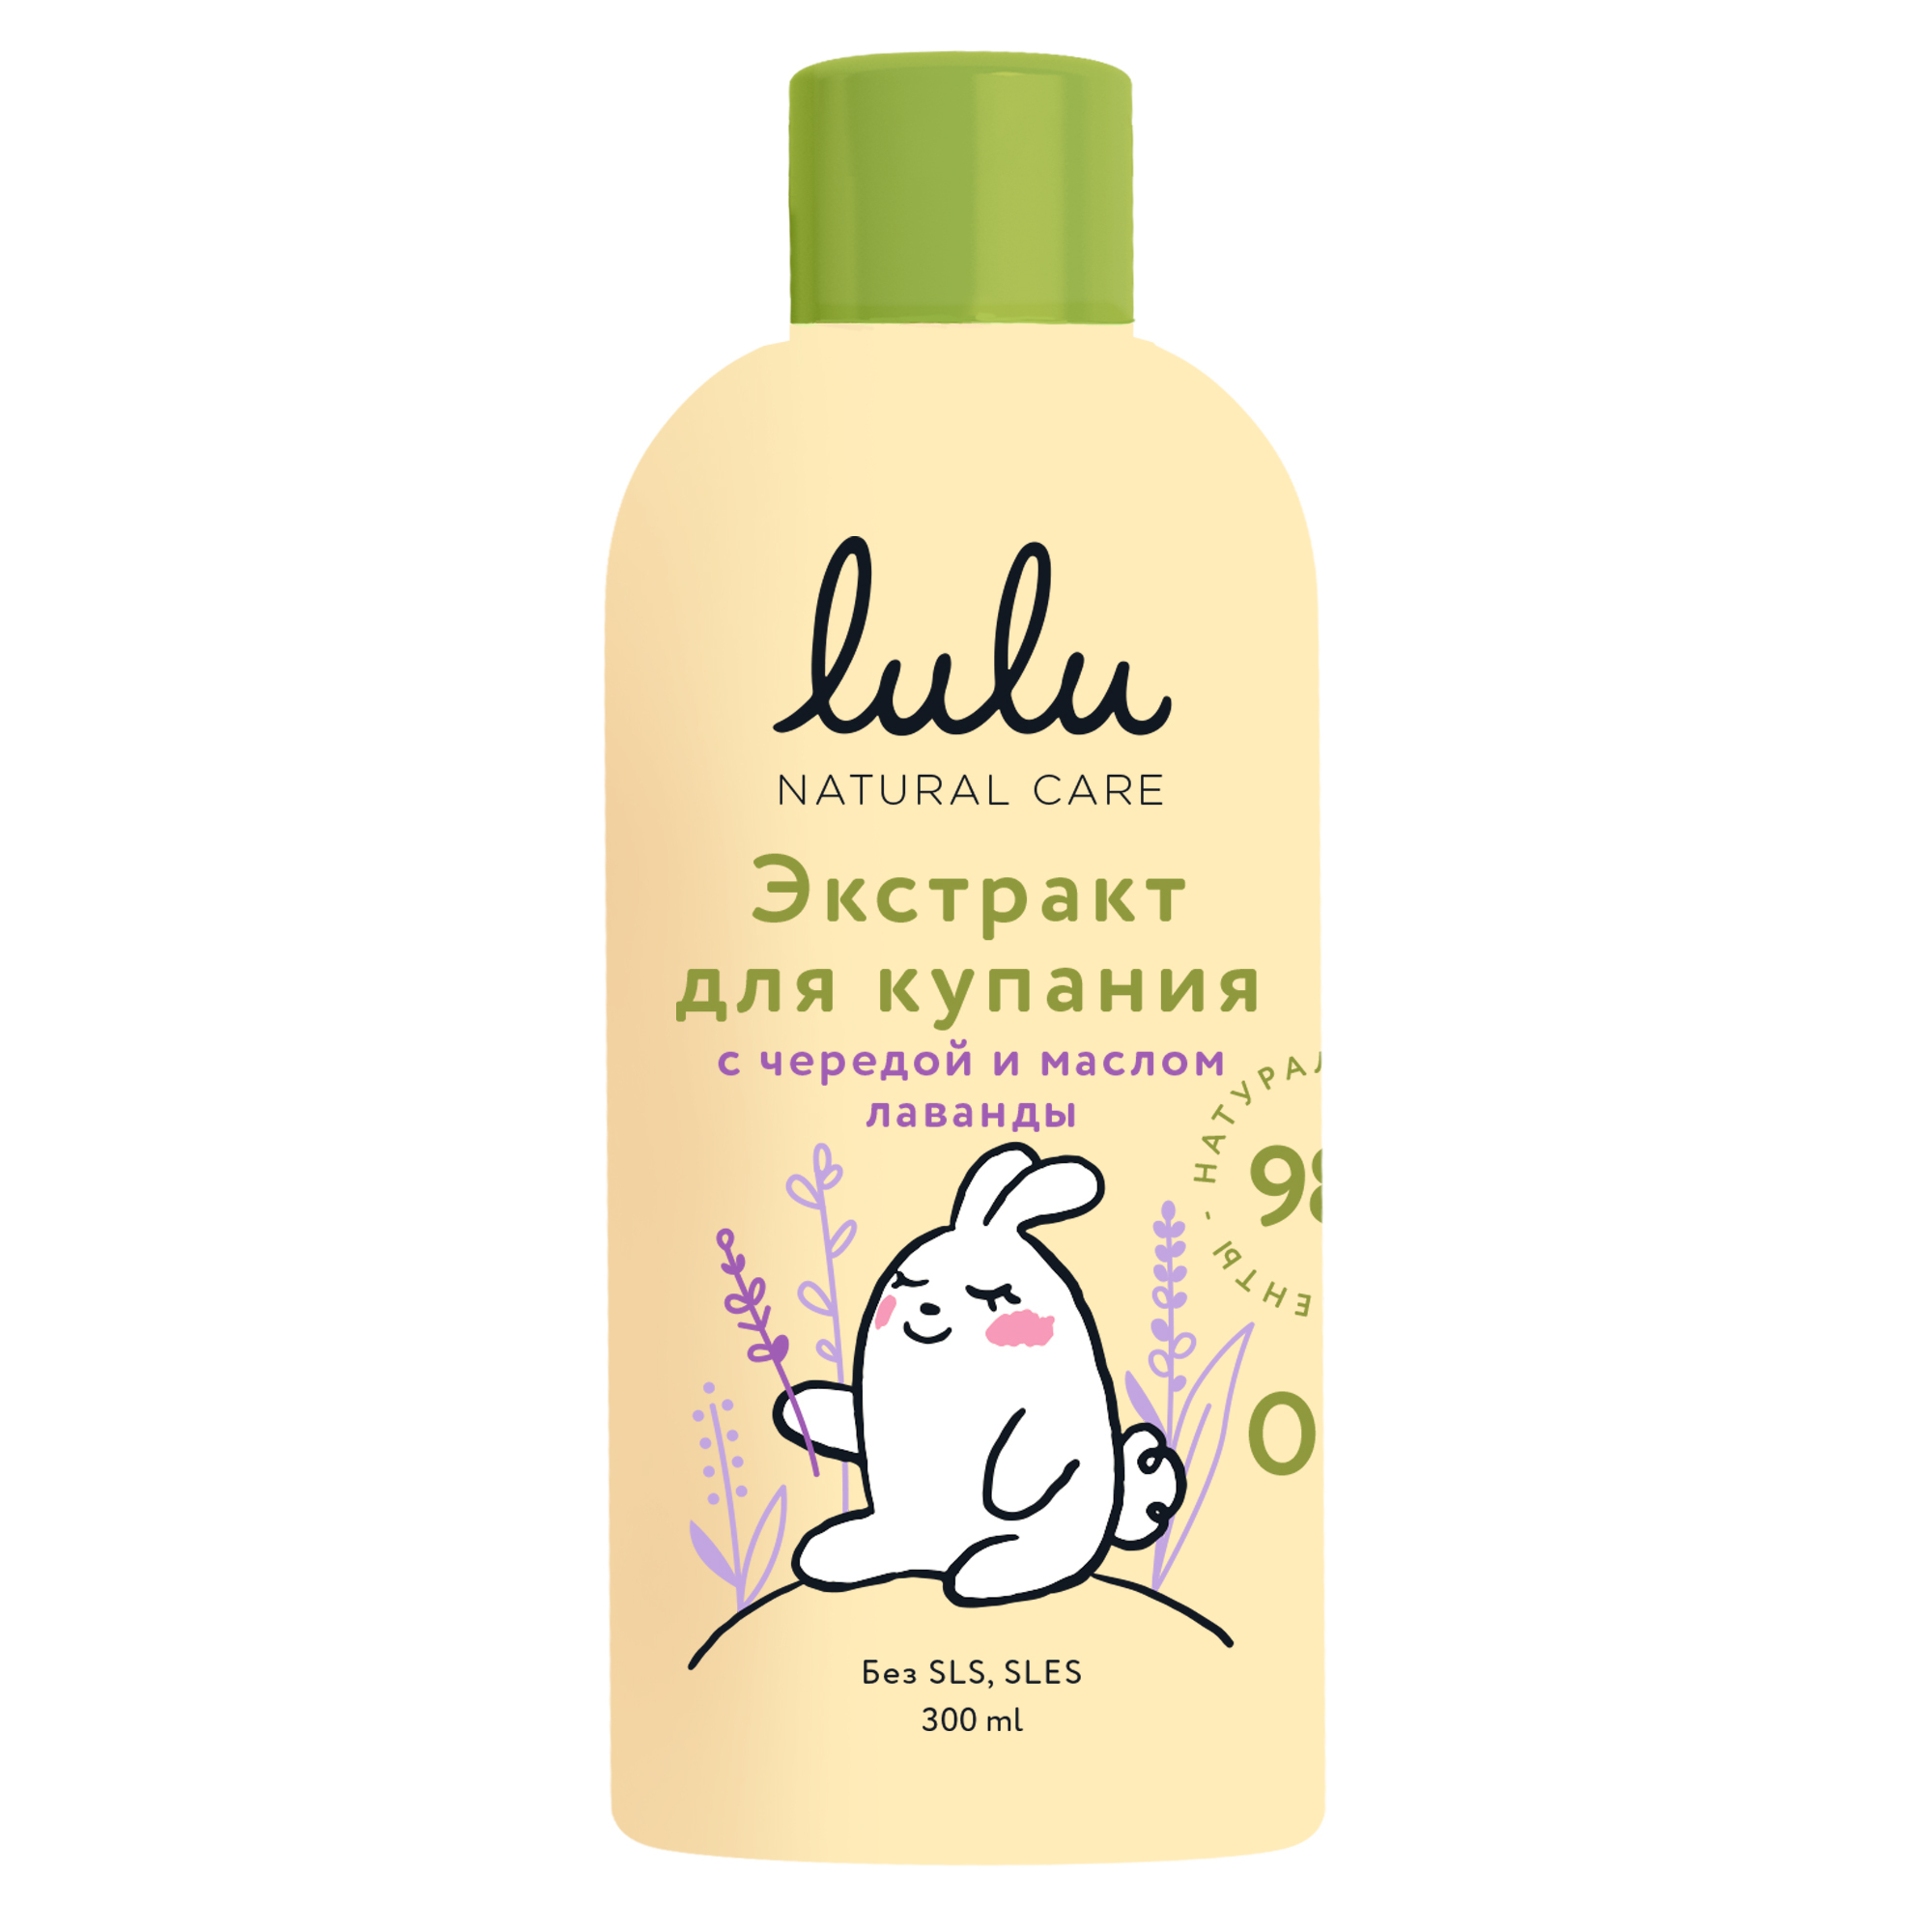 Масло для купания детей. Экстракт для купания малышей Lulu с календулой, 300 мл. Lulu экстракт для купания малышей с ромашкой и маслом мелиссы, (300х28). Лулу экстракт для купания. Экстракт для купания малышей с ромашкой и маслом мелиссы "Lulu".